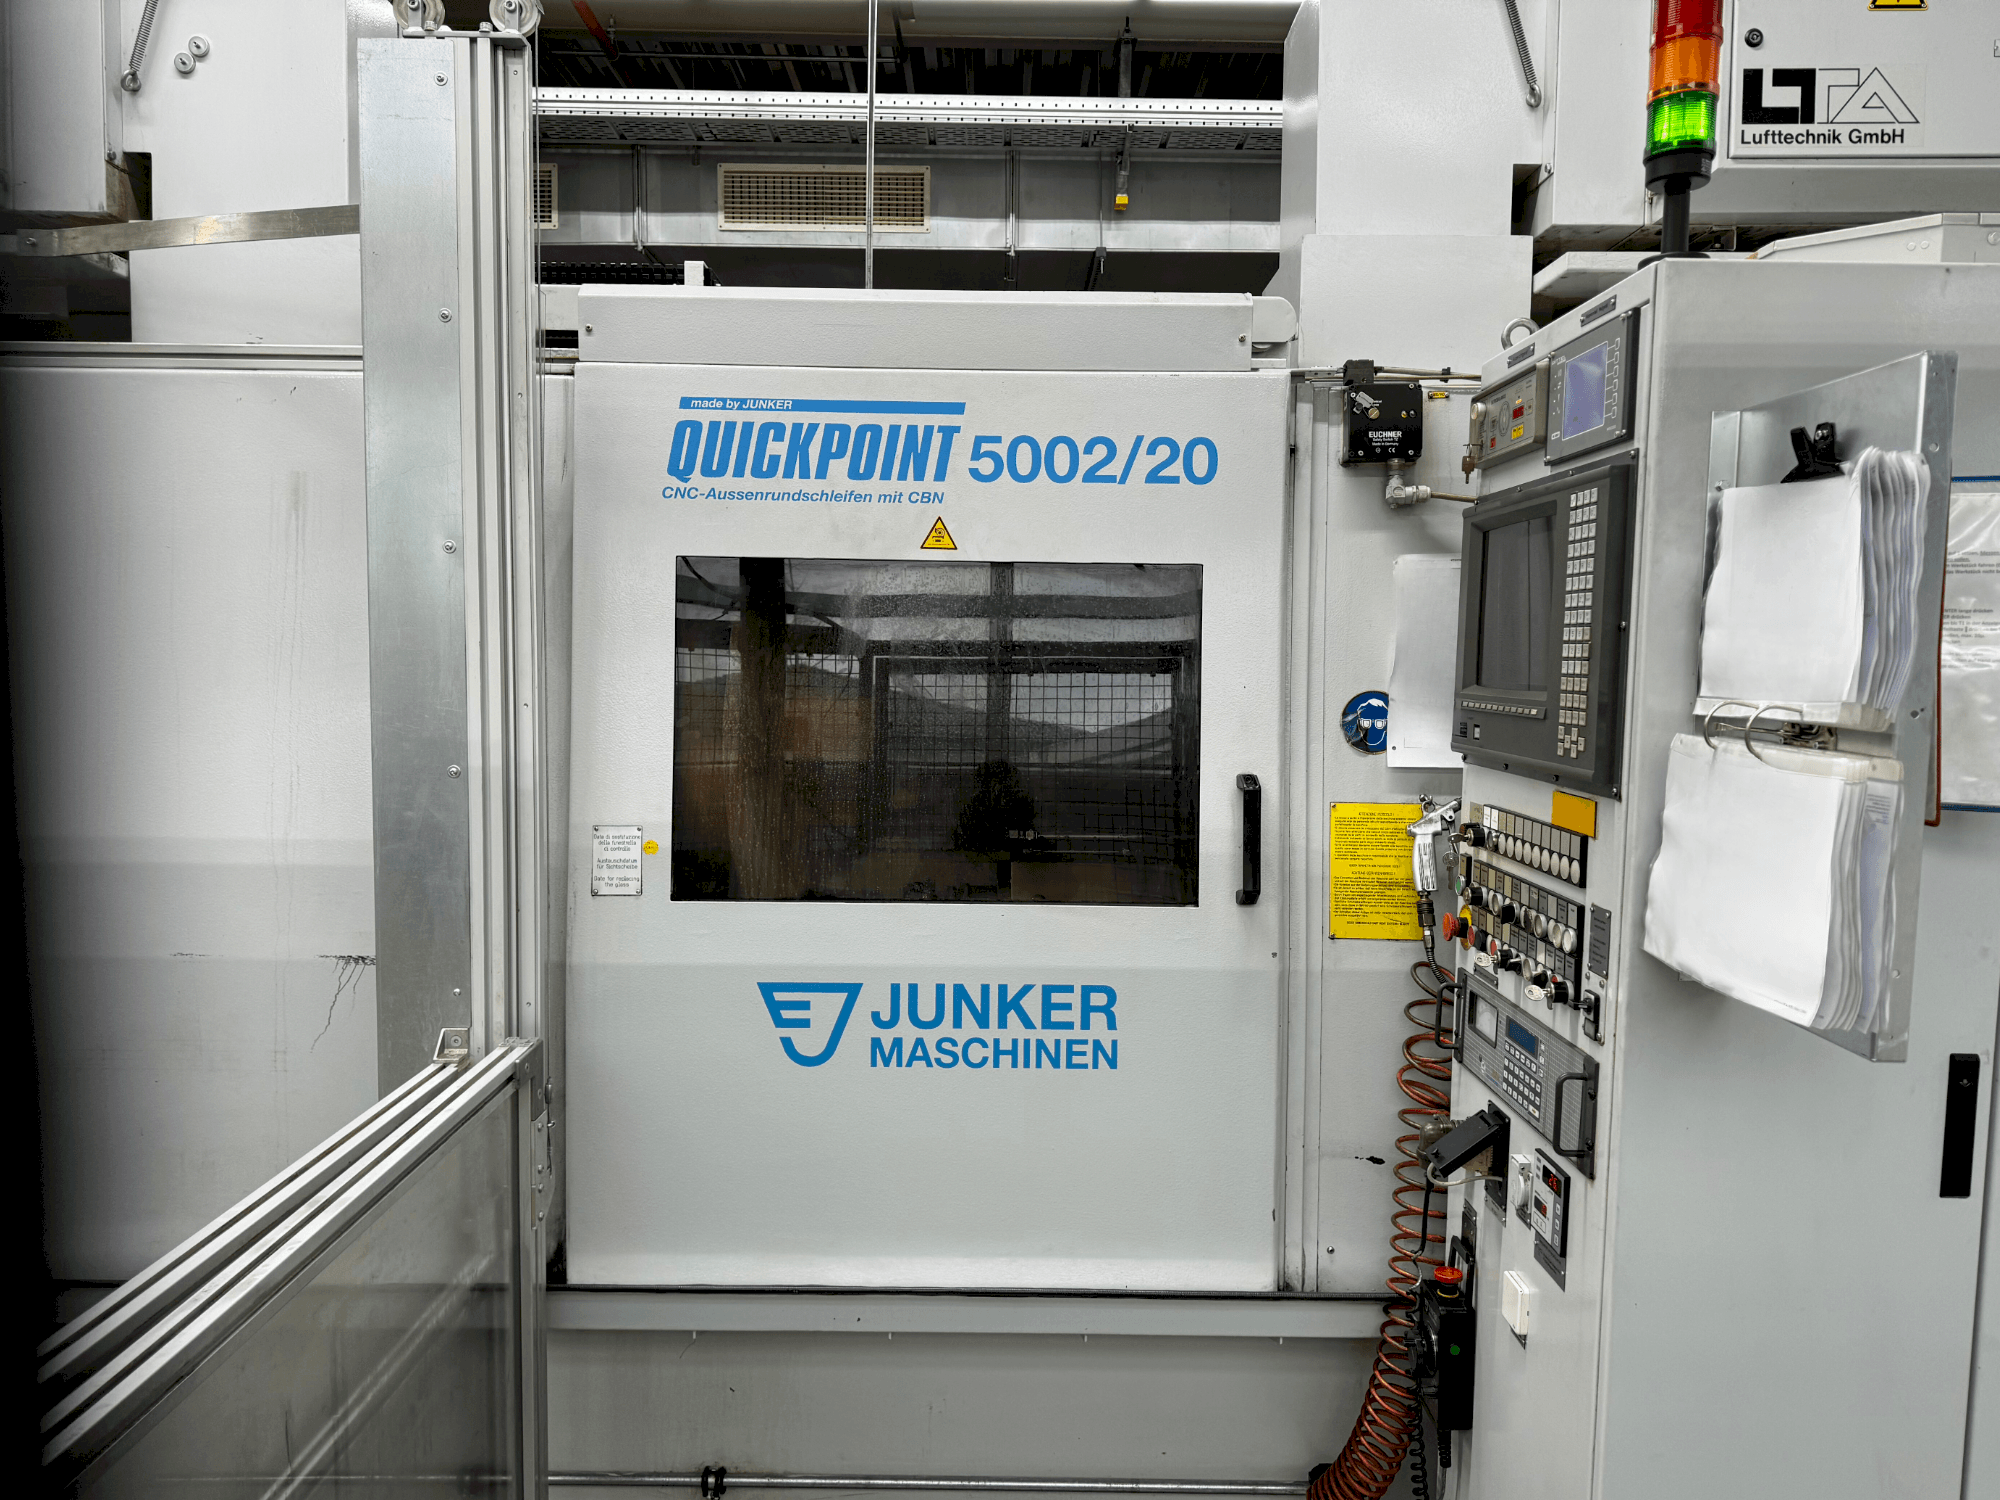 Vooraanzicht  van JUNKER Quickpoint 5002/20  machine